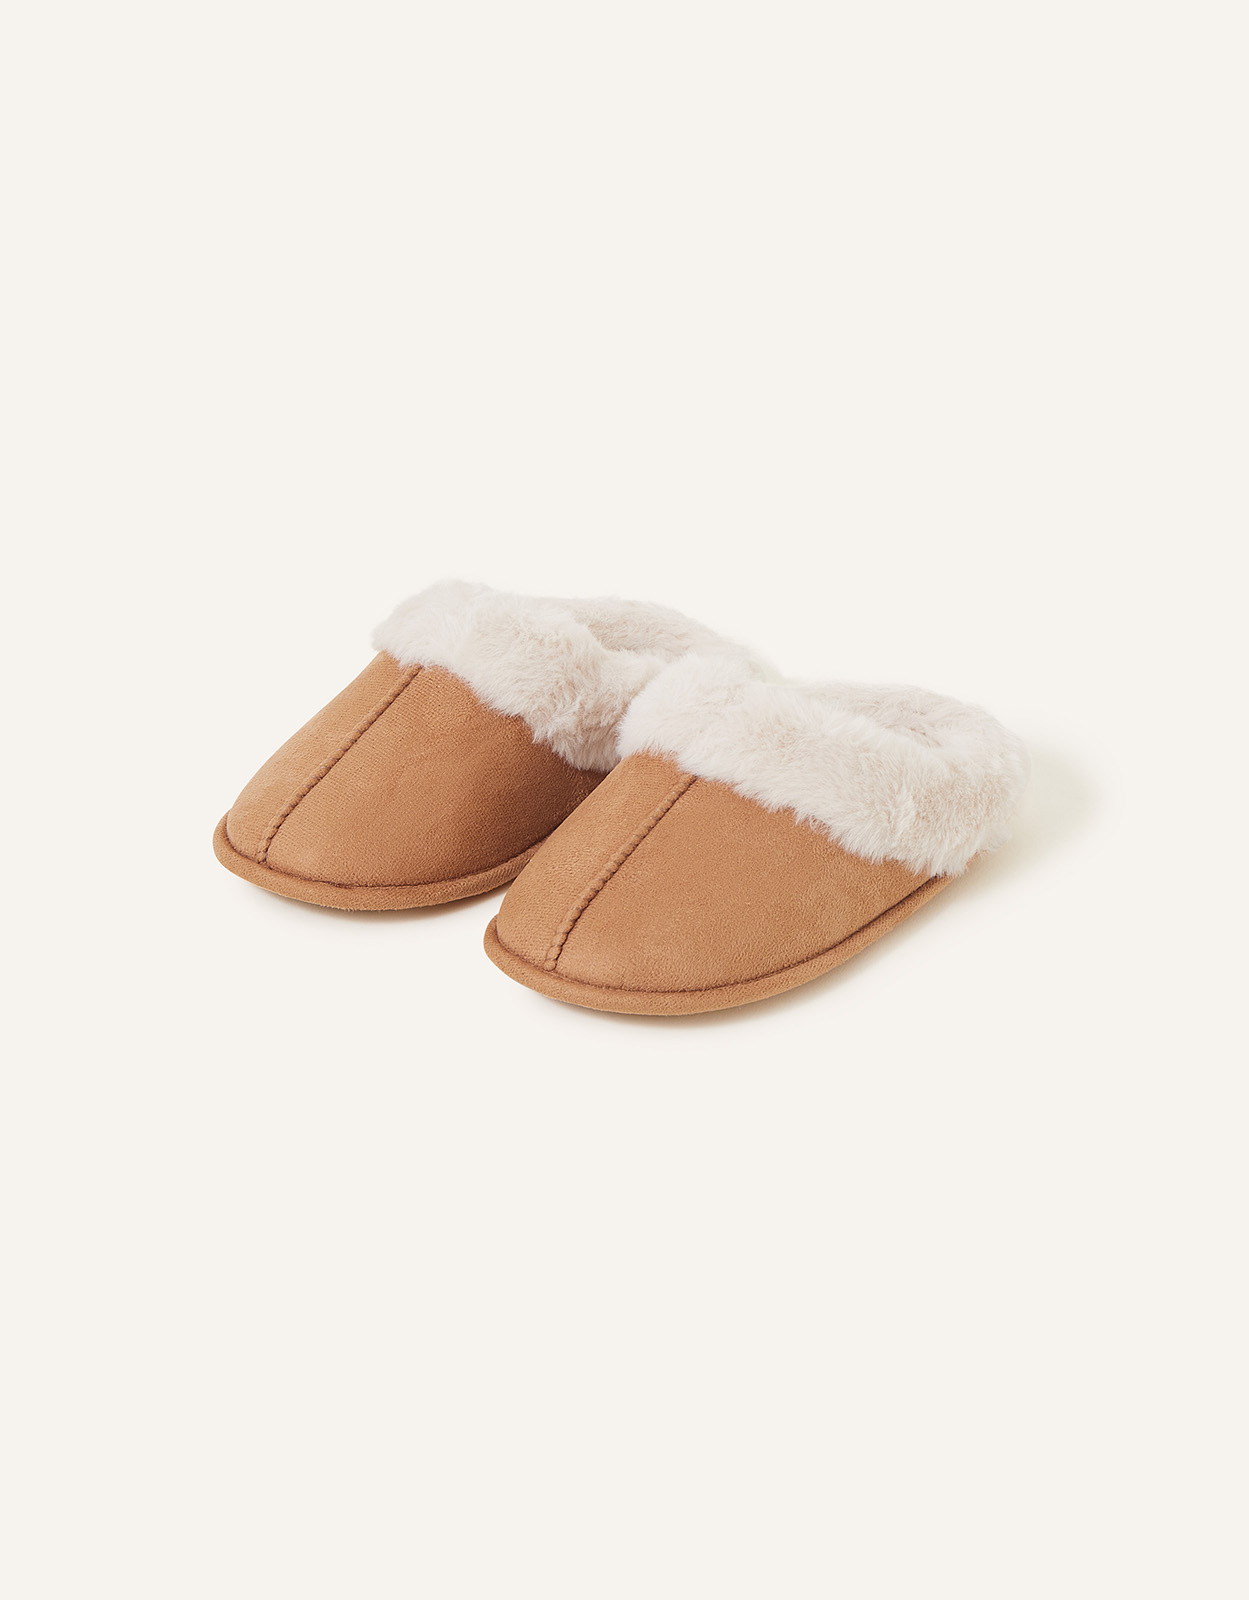 Accessorize Women's Faux Fur Mule Slippers Tan, Size: XL